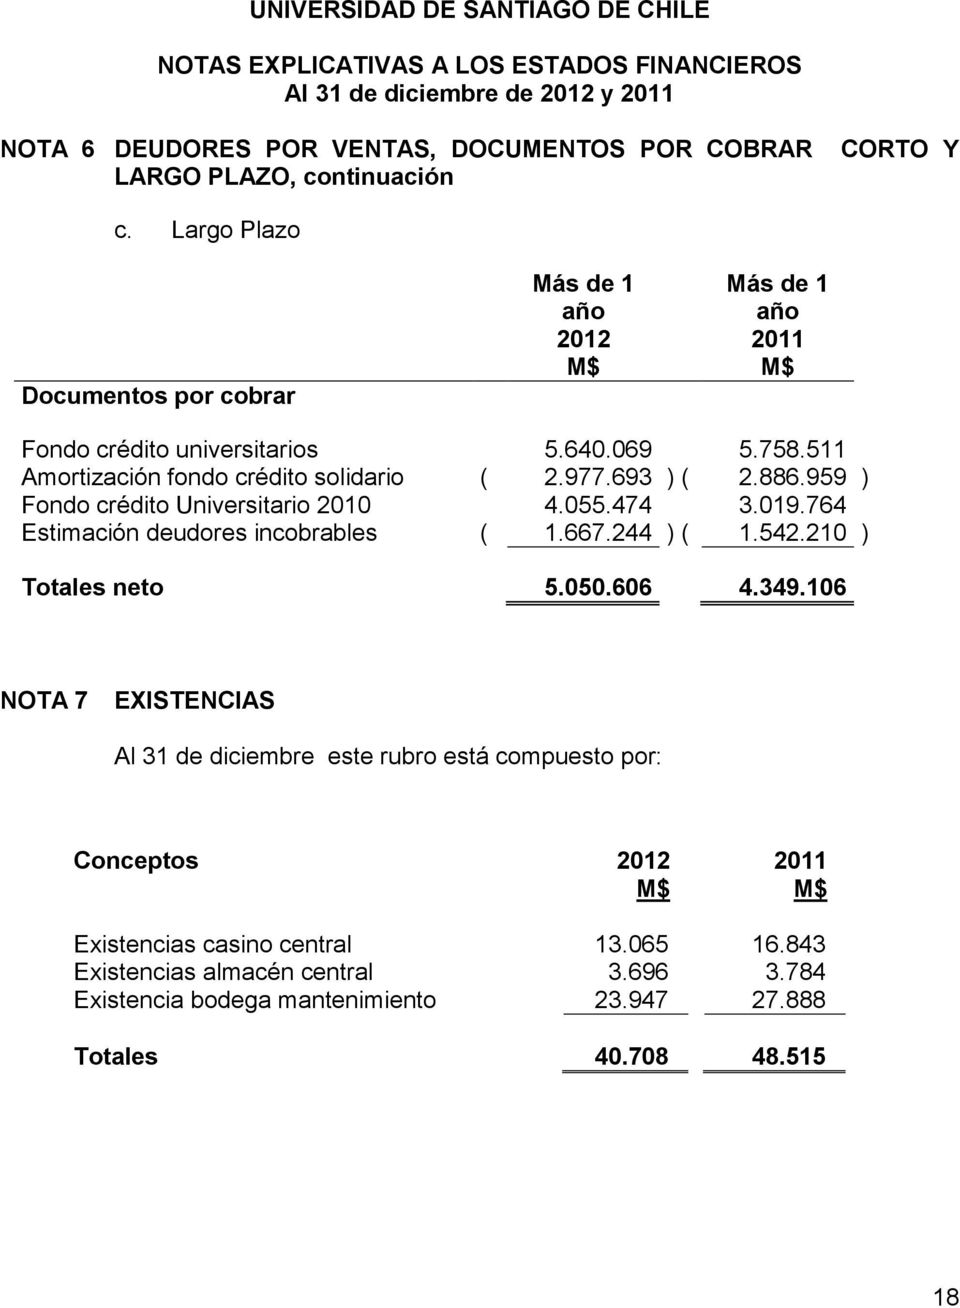 977.693 ) ( 2.886.959 ) Fondo crédito Universitario 2010 4.055.474 3.019.764 Estimación deudores incobrables ( 1.667.244 ) ( 1.542.210 ) Totales neto 5.050.606 4.349.